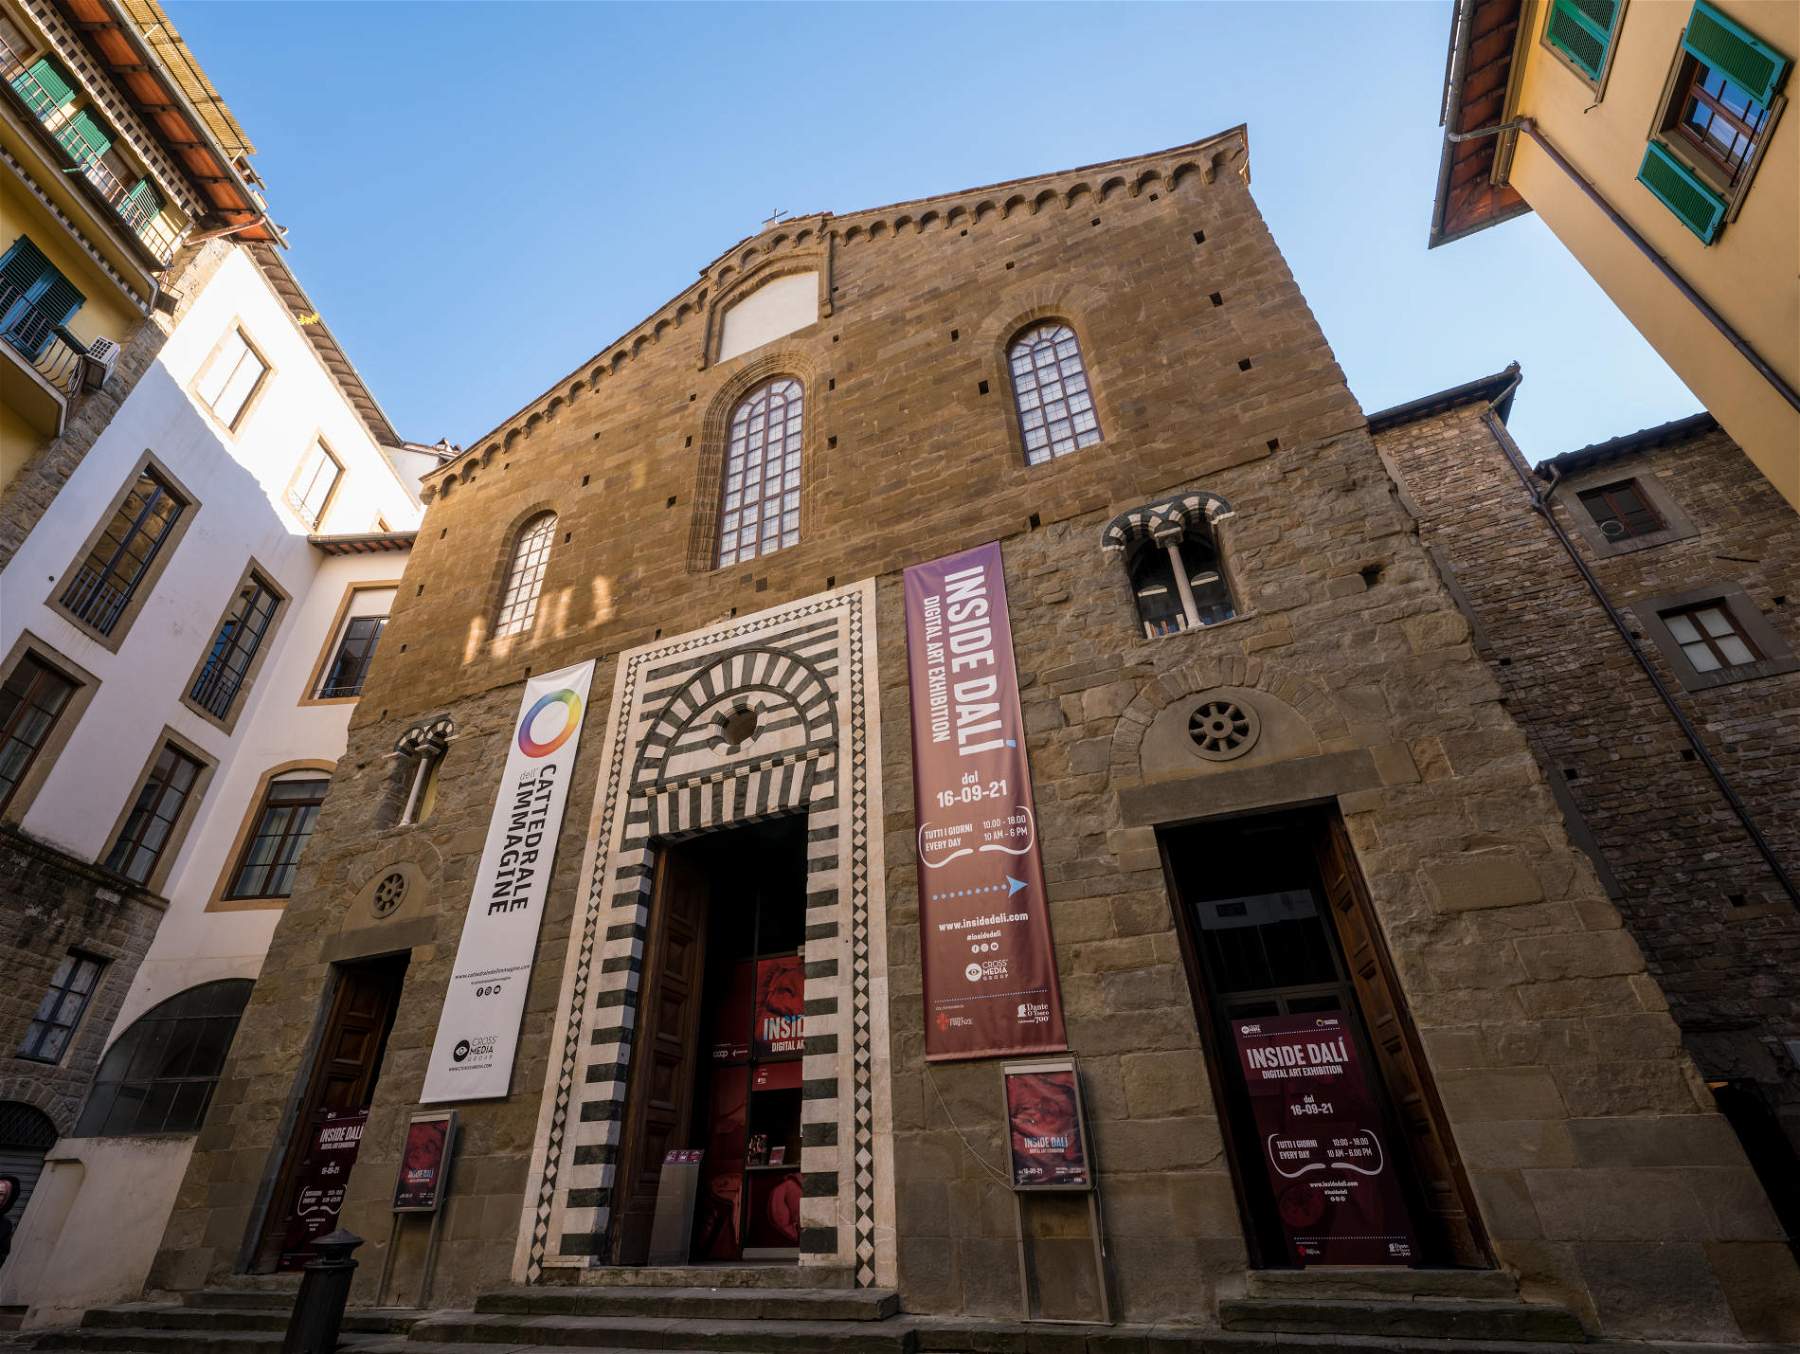 Brevissime: Leçons d'histoire de l'art à Florence par la maison d'édition Centro Di